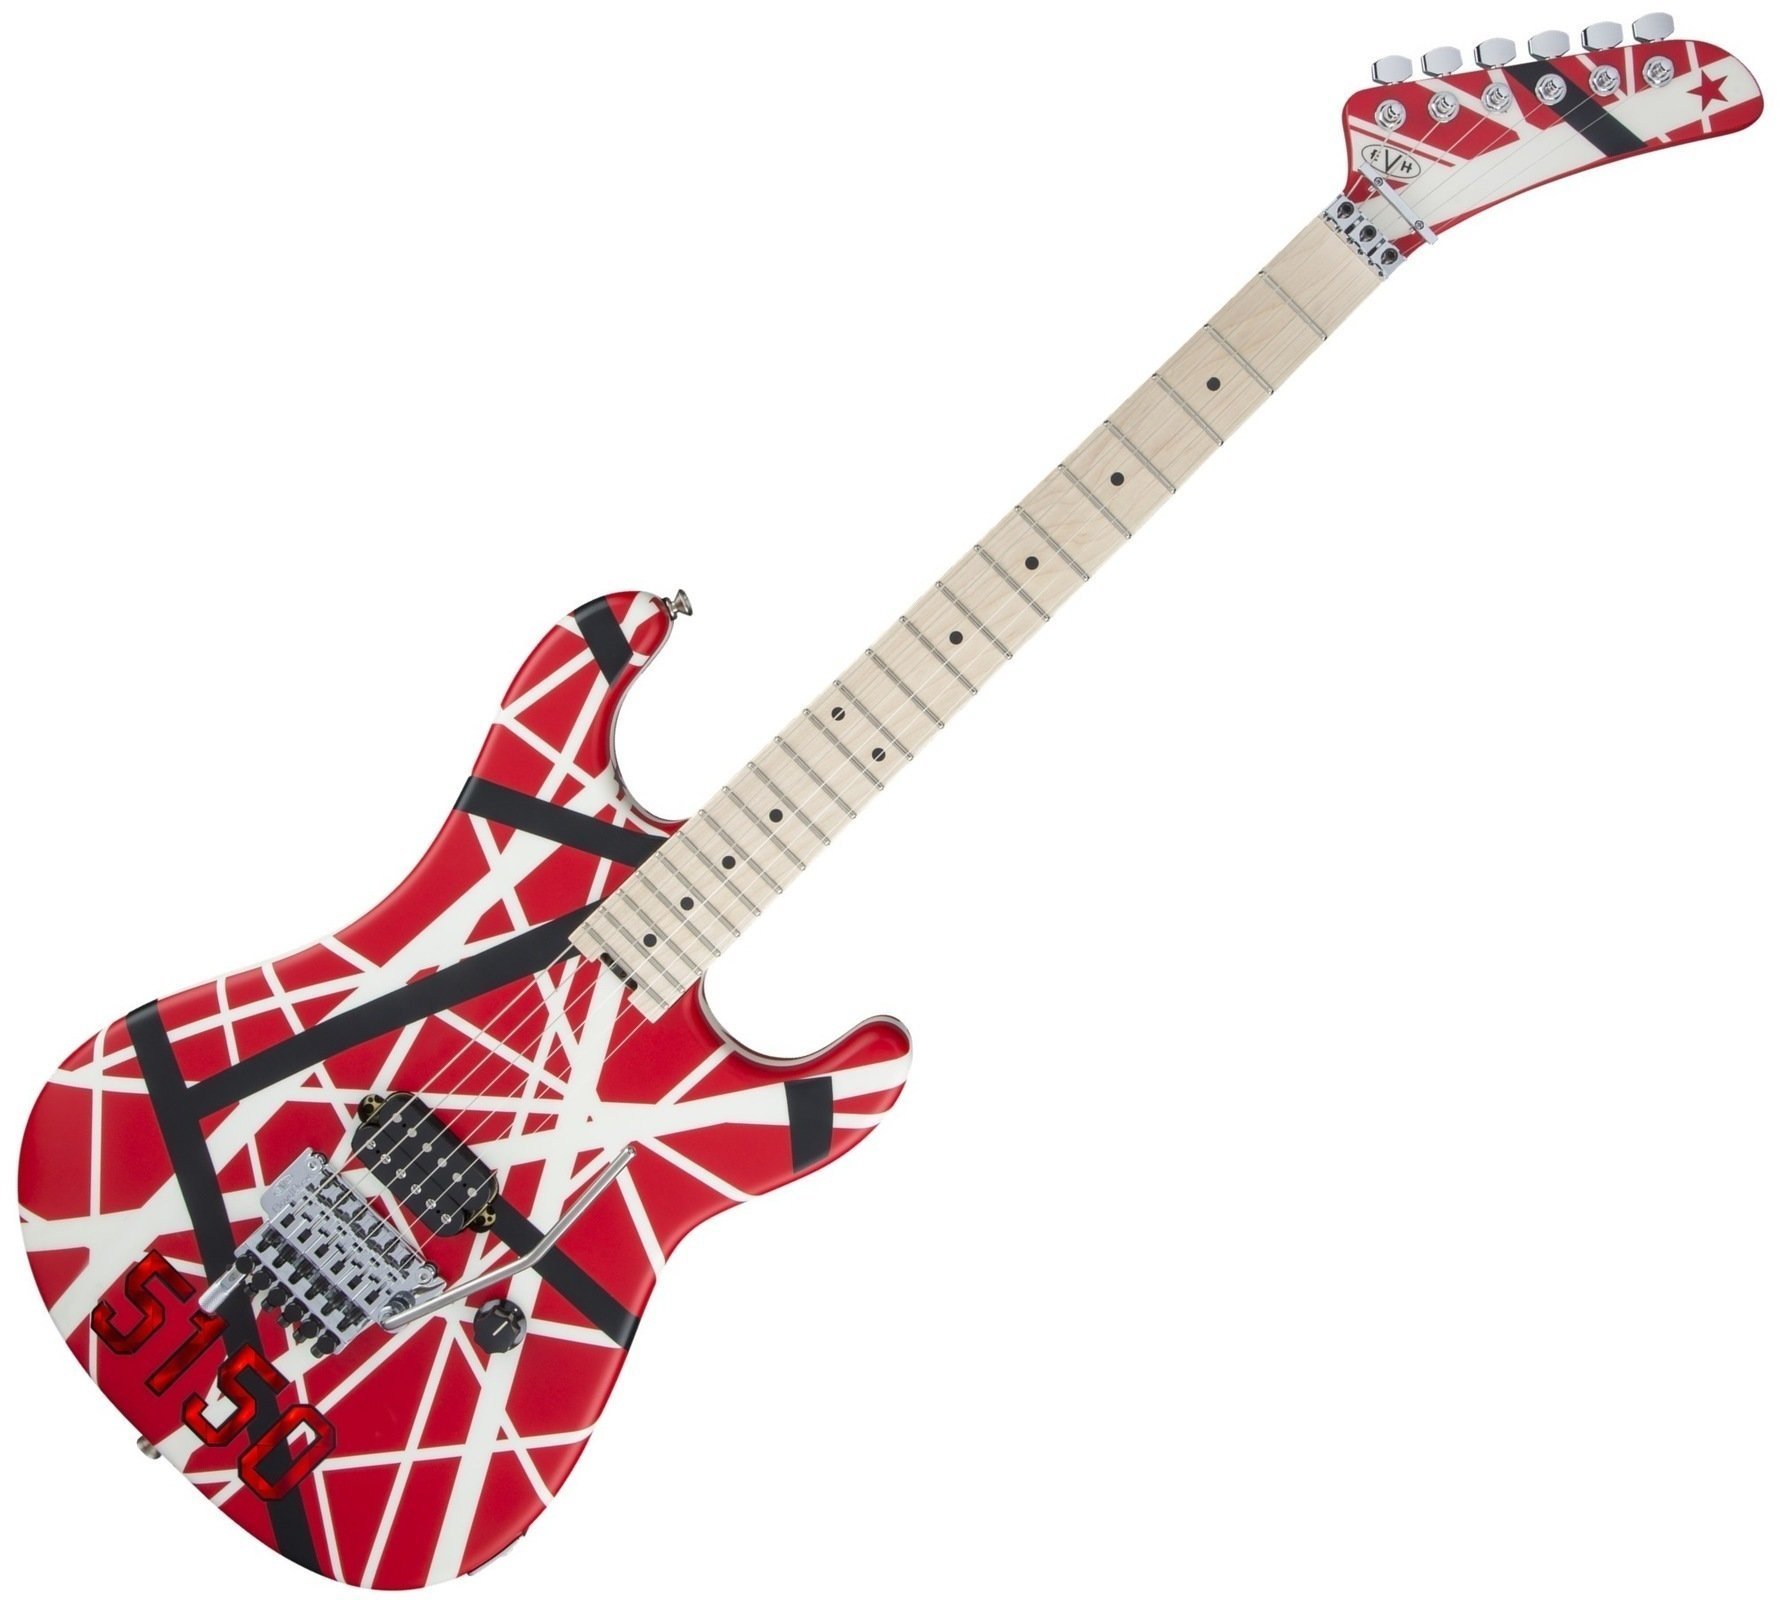 Elektrická kytara EVH Striped Series 5150 MN Red Black and White Stripes